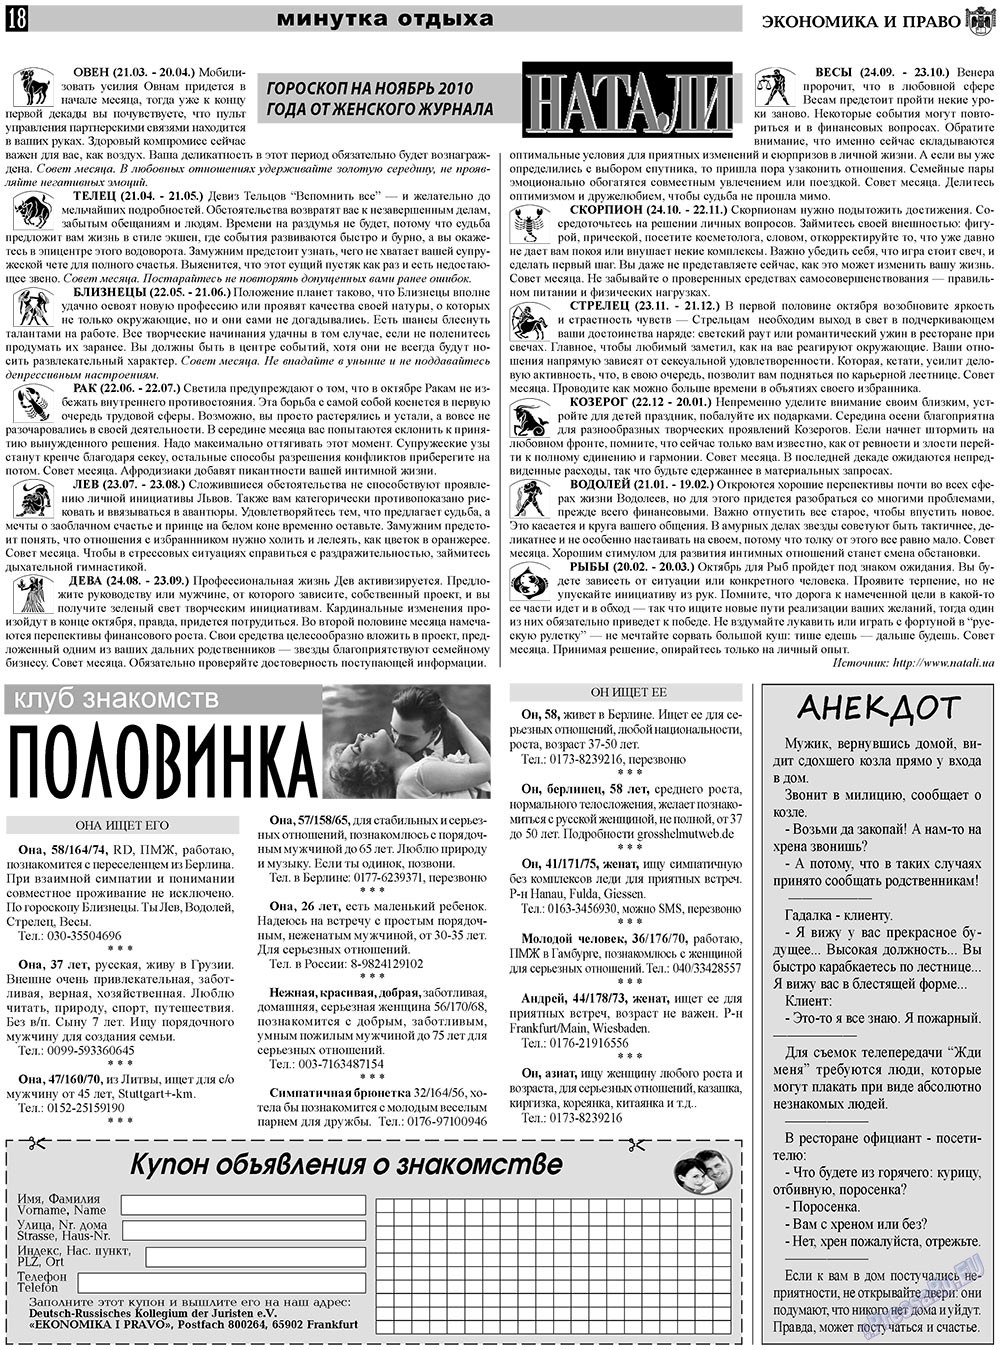 Экономика и право, газета. 2010 №11 стр.18